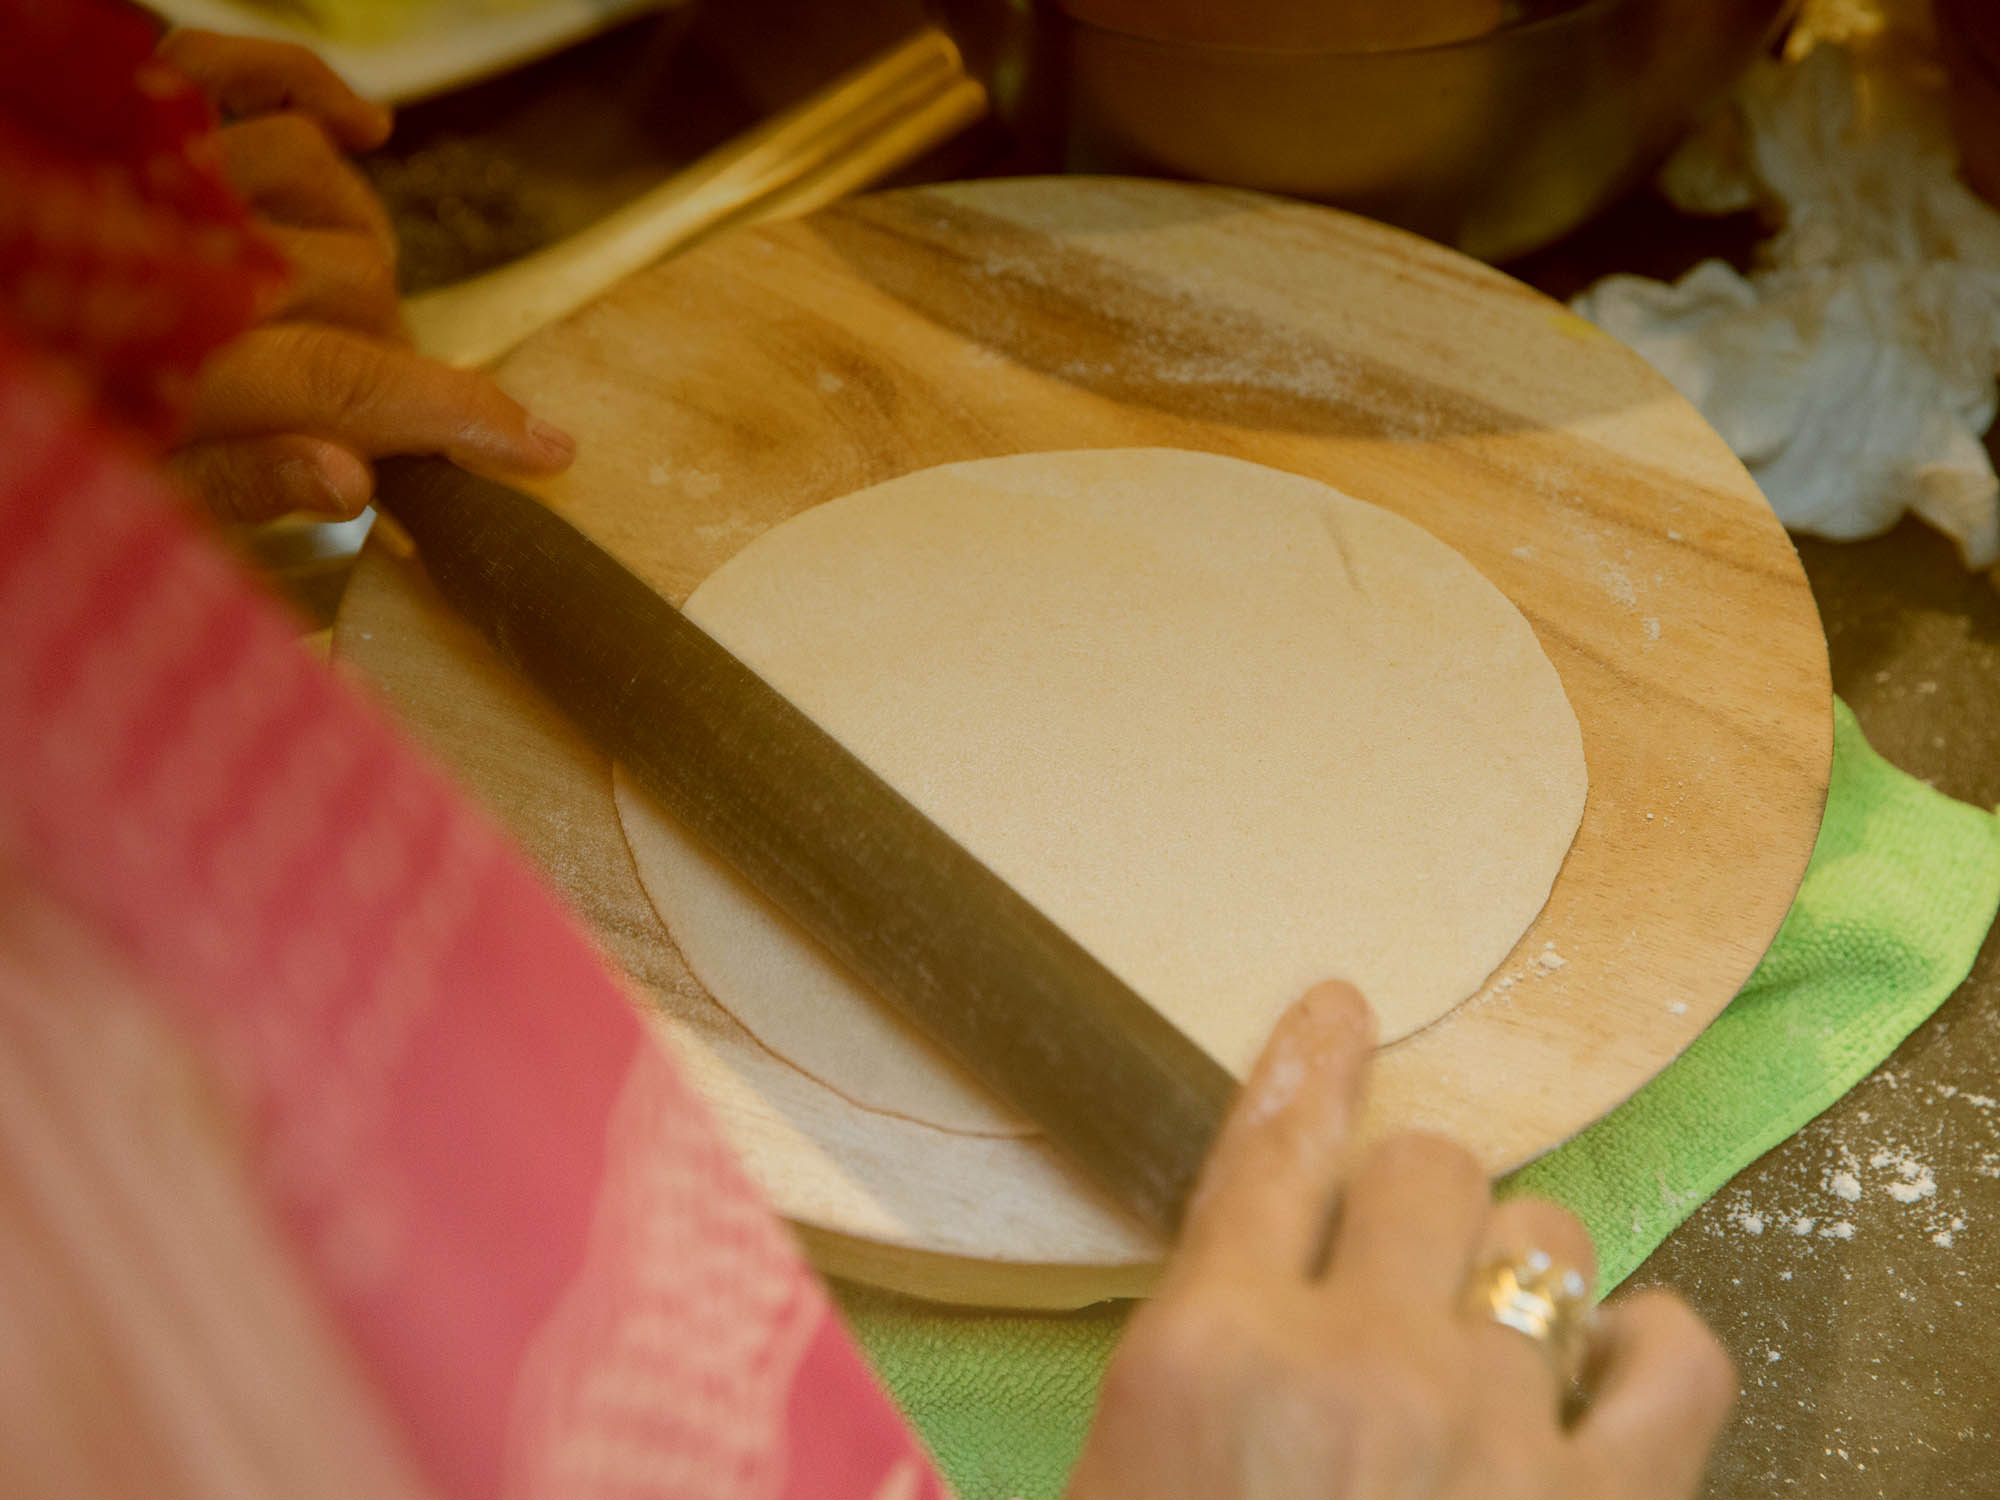 रोटी बनाने वाले पटा बेलन से सही इस्तेमाल से होती है धनवर्षा, जान लें ये जरूरी 11 टिप्स